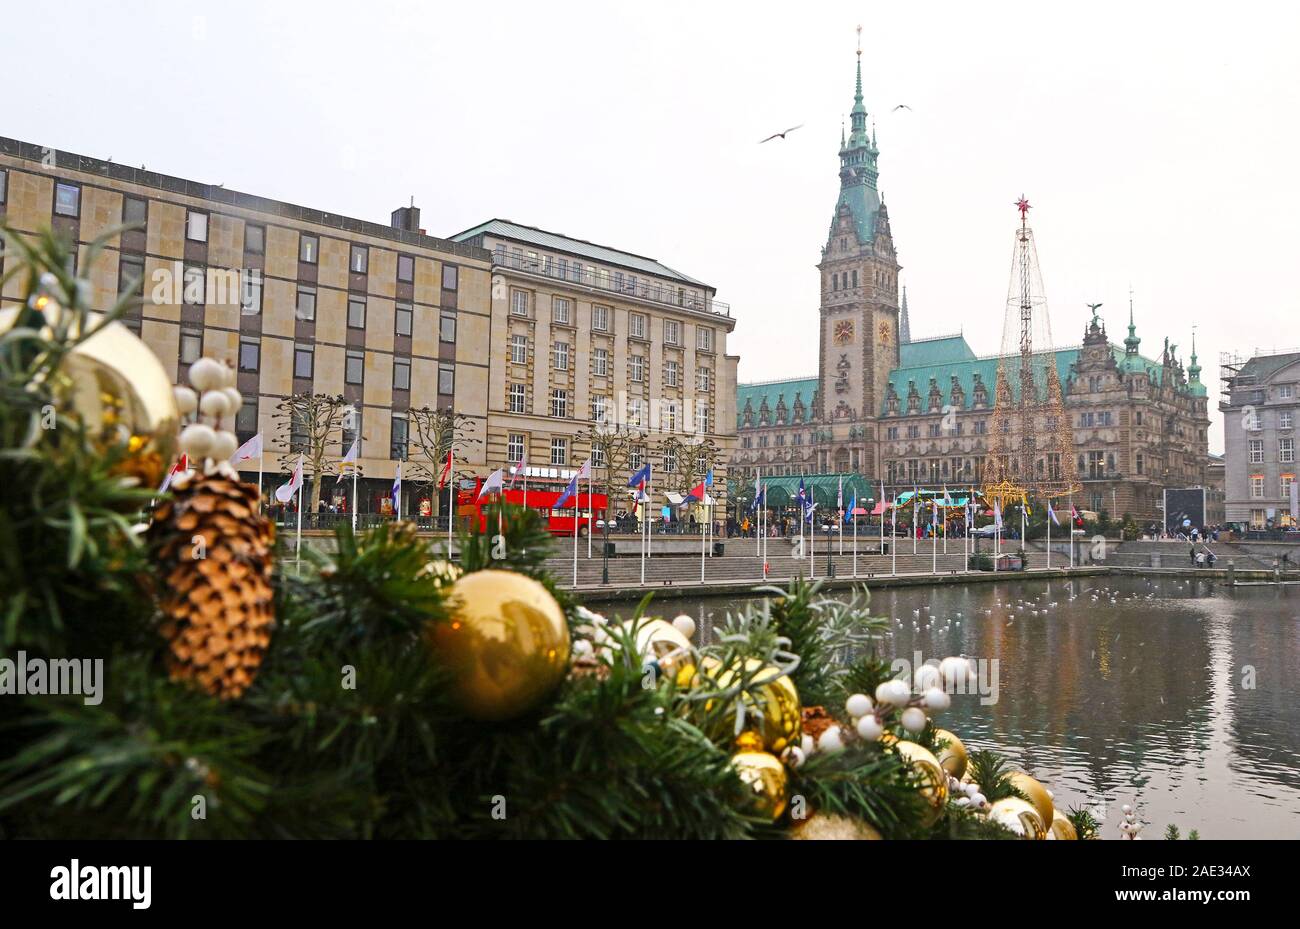 Vista invernale del lago Binnenalster e mercatino di Natale in piazza Municipio vicino dal Municipio di Amburgo (Amburgo Rathaus), Germania. Le decorazioni di Natale sulla Foto Stock